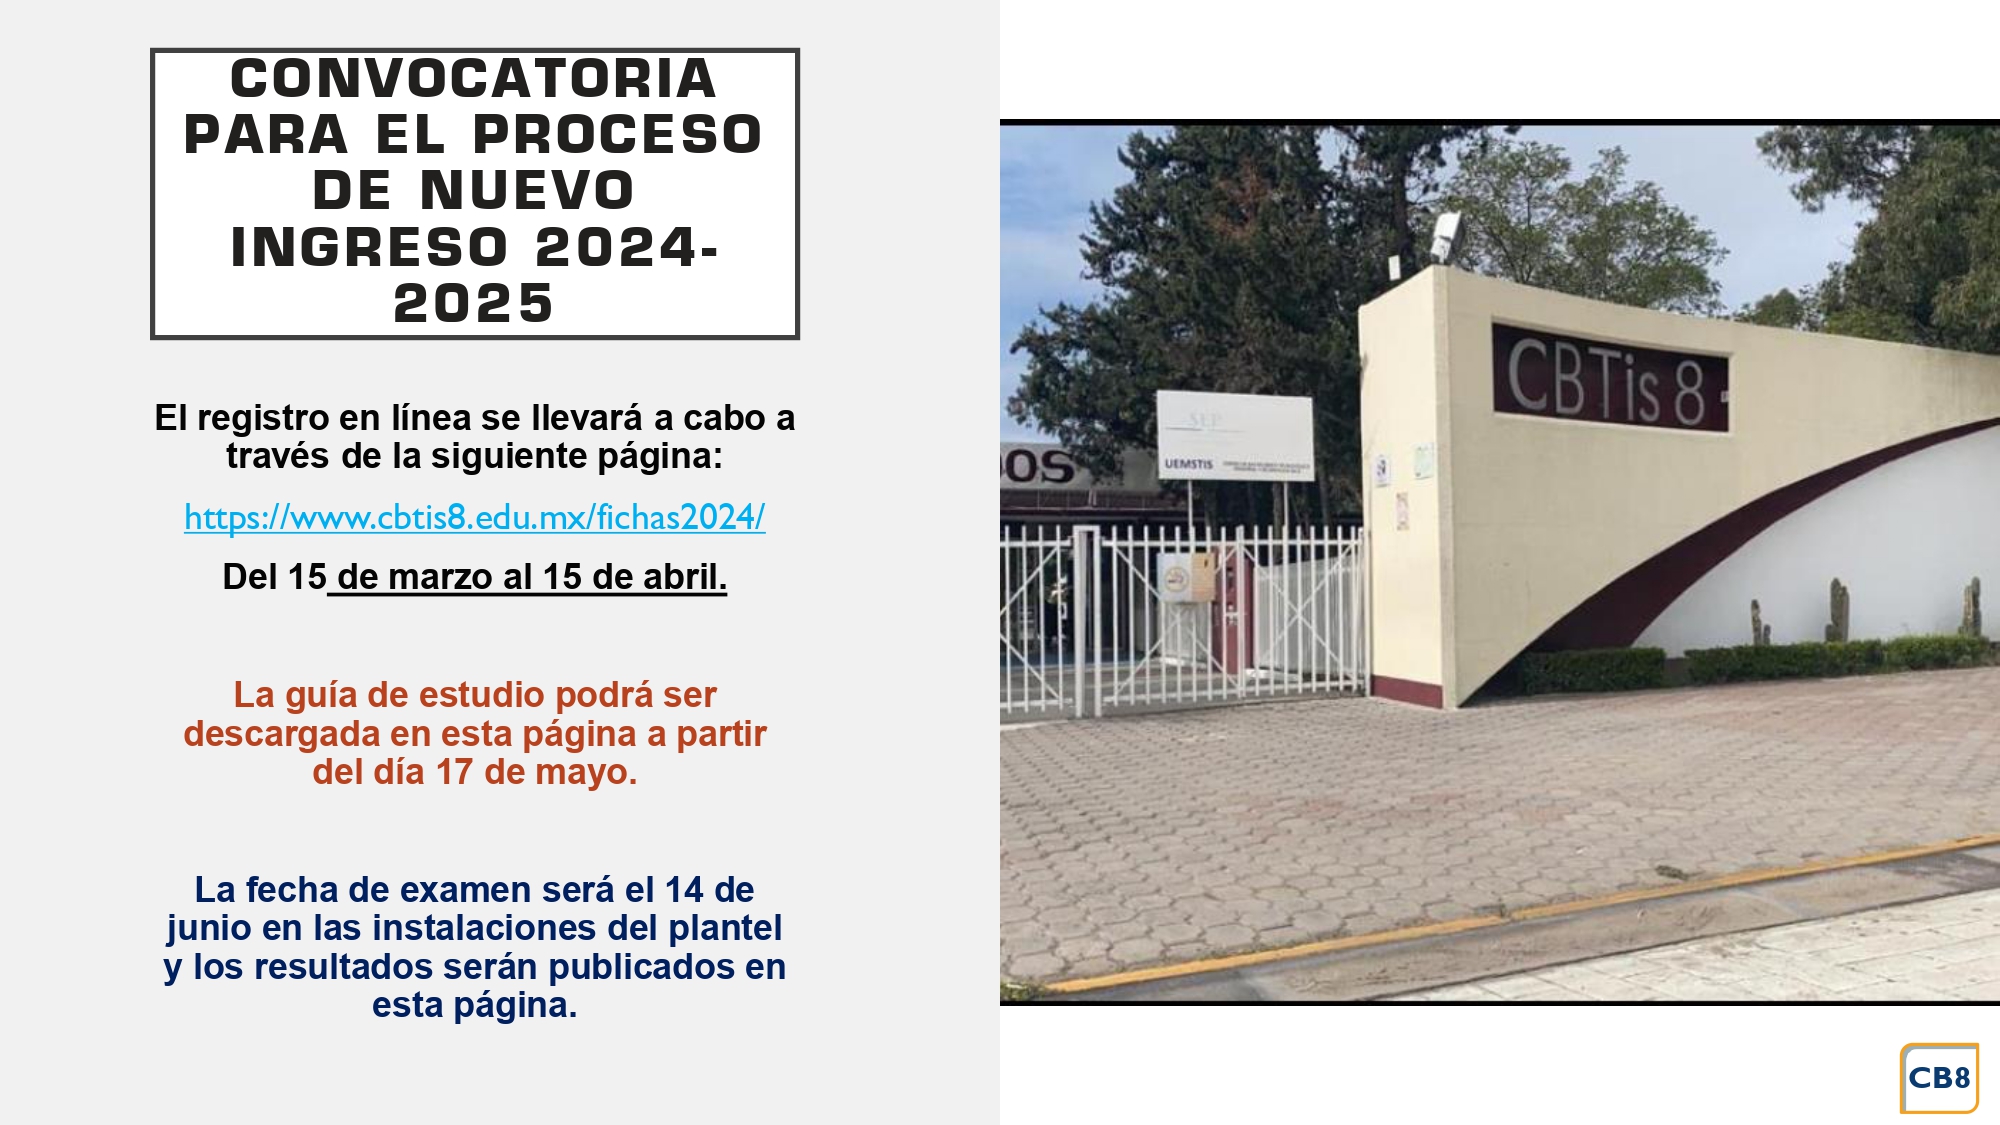 CONVOCATORIA_PARA_EL_PROCESO_DE_NUEVO_INGRESO_2024-2025_page-0001.jpg